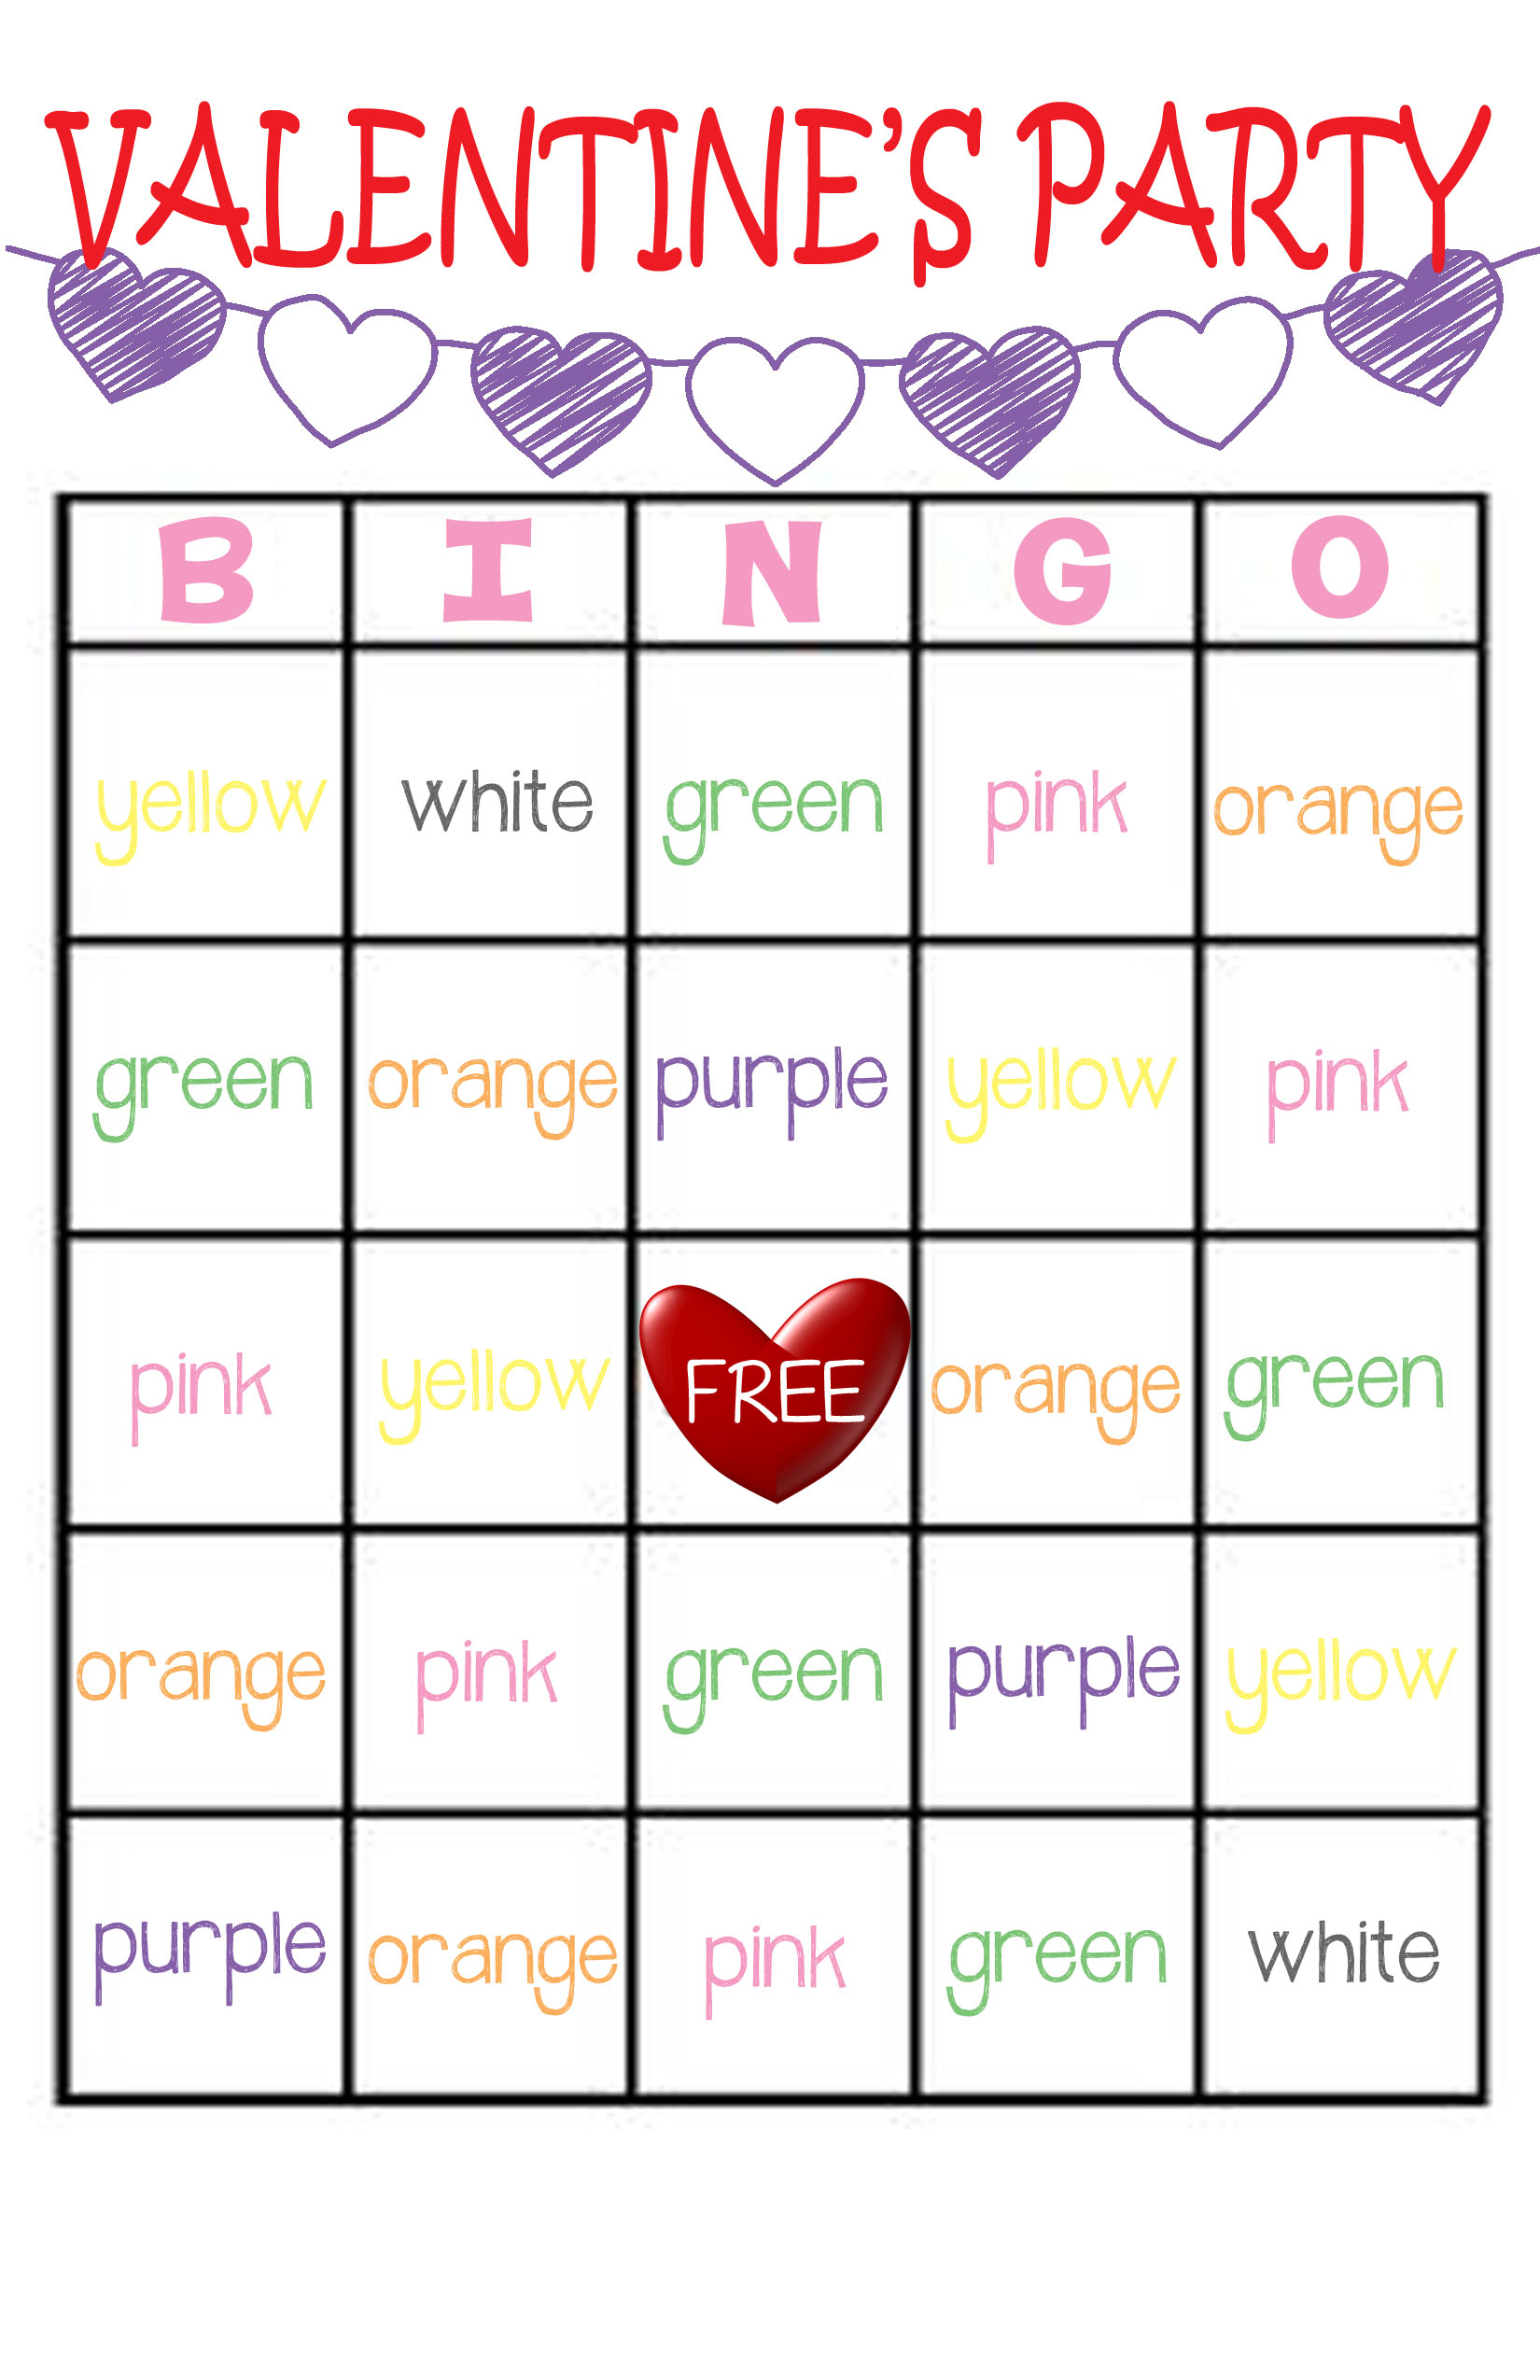 Classroom Valentine’s Party Bingo Game FREE Printable